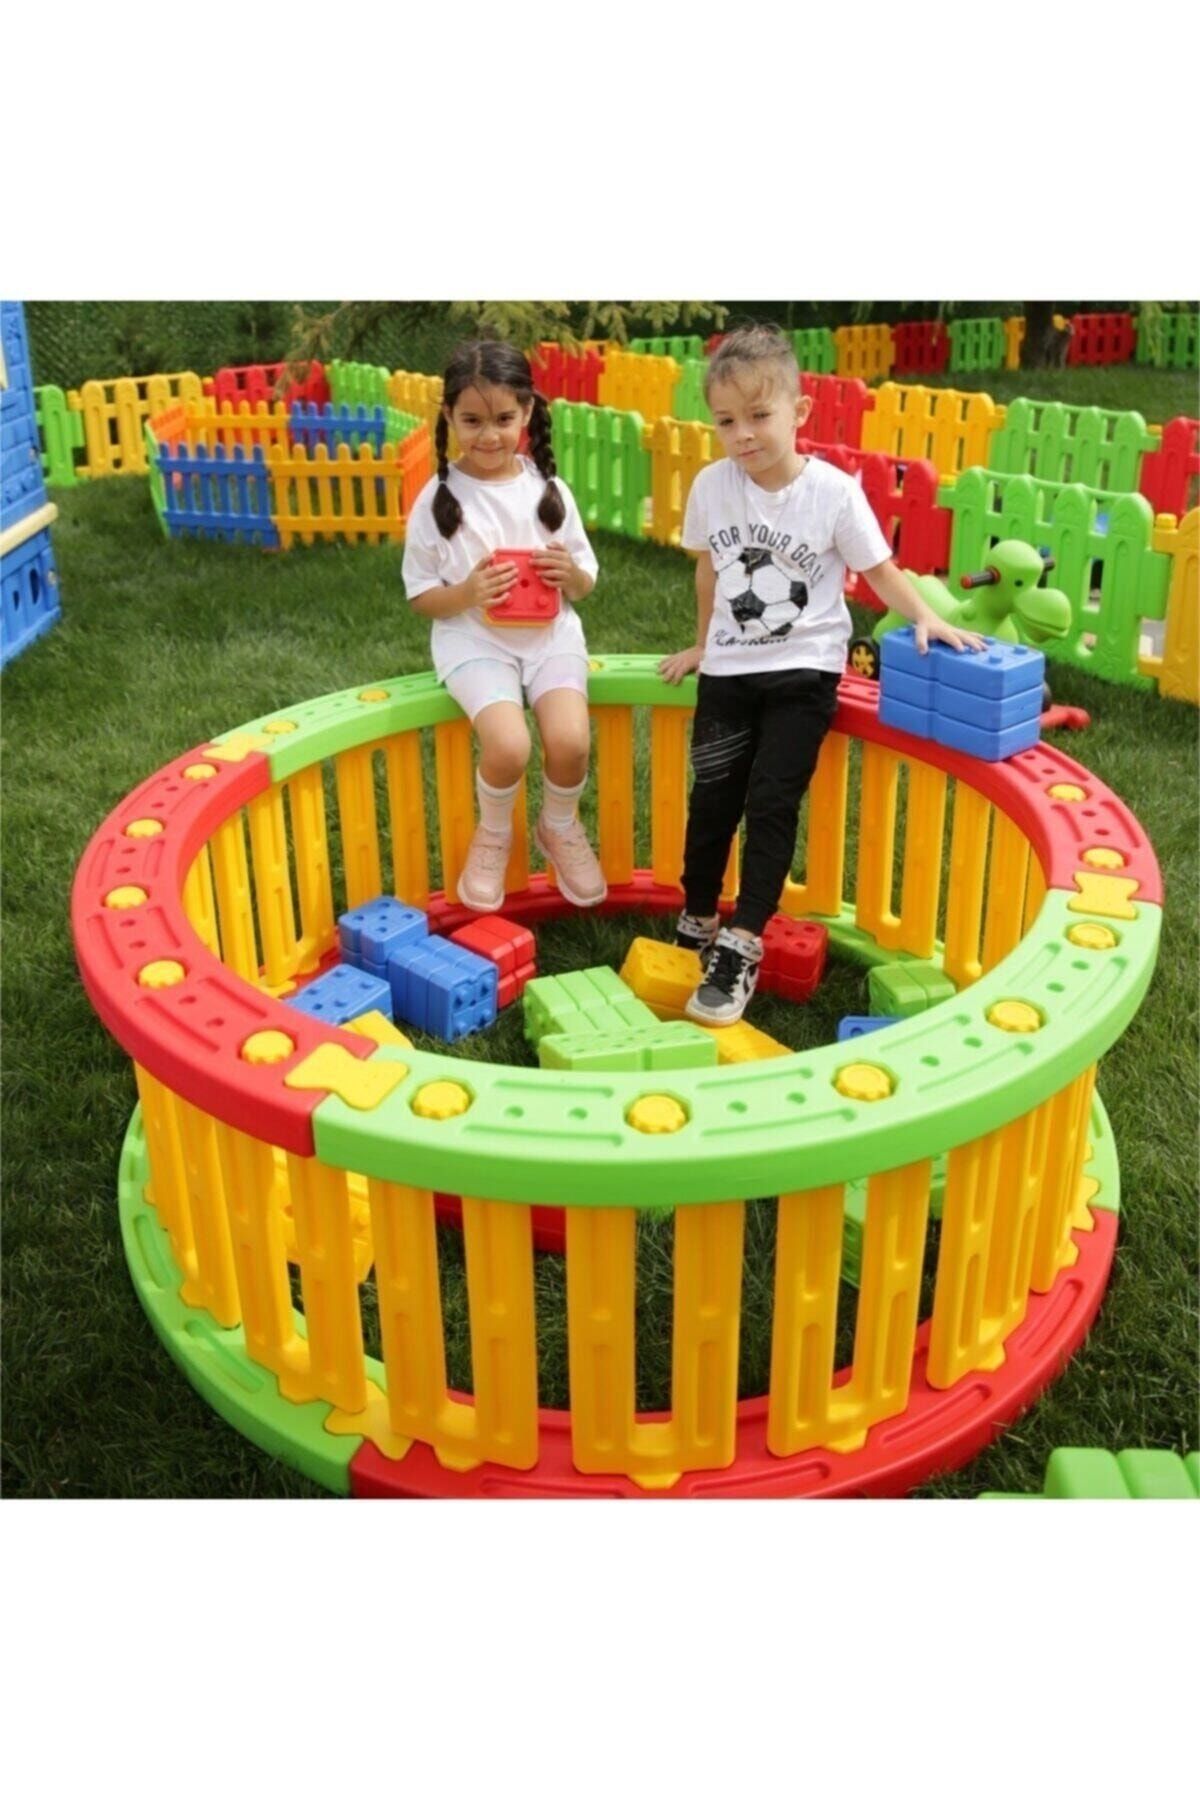 EXECTUS Oyun Çiti Oyun Alanı Top Havuzu 3 Renk - Çocuk Oyun Parkı - Güvenli Alan - Top Havuzu - Aktivite